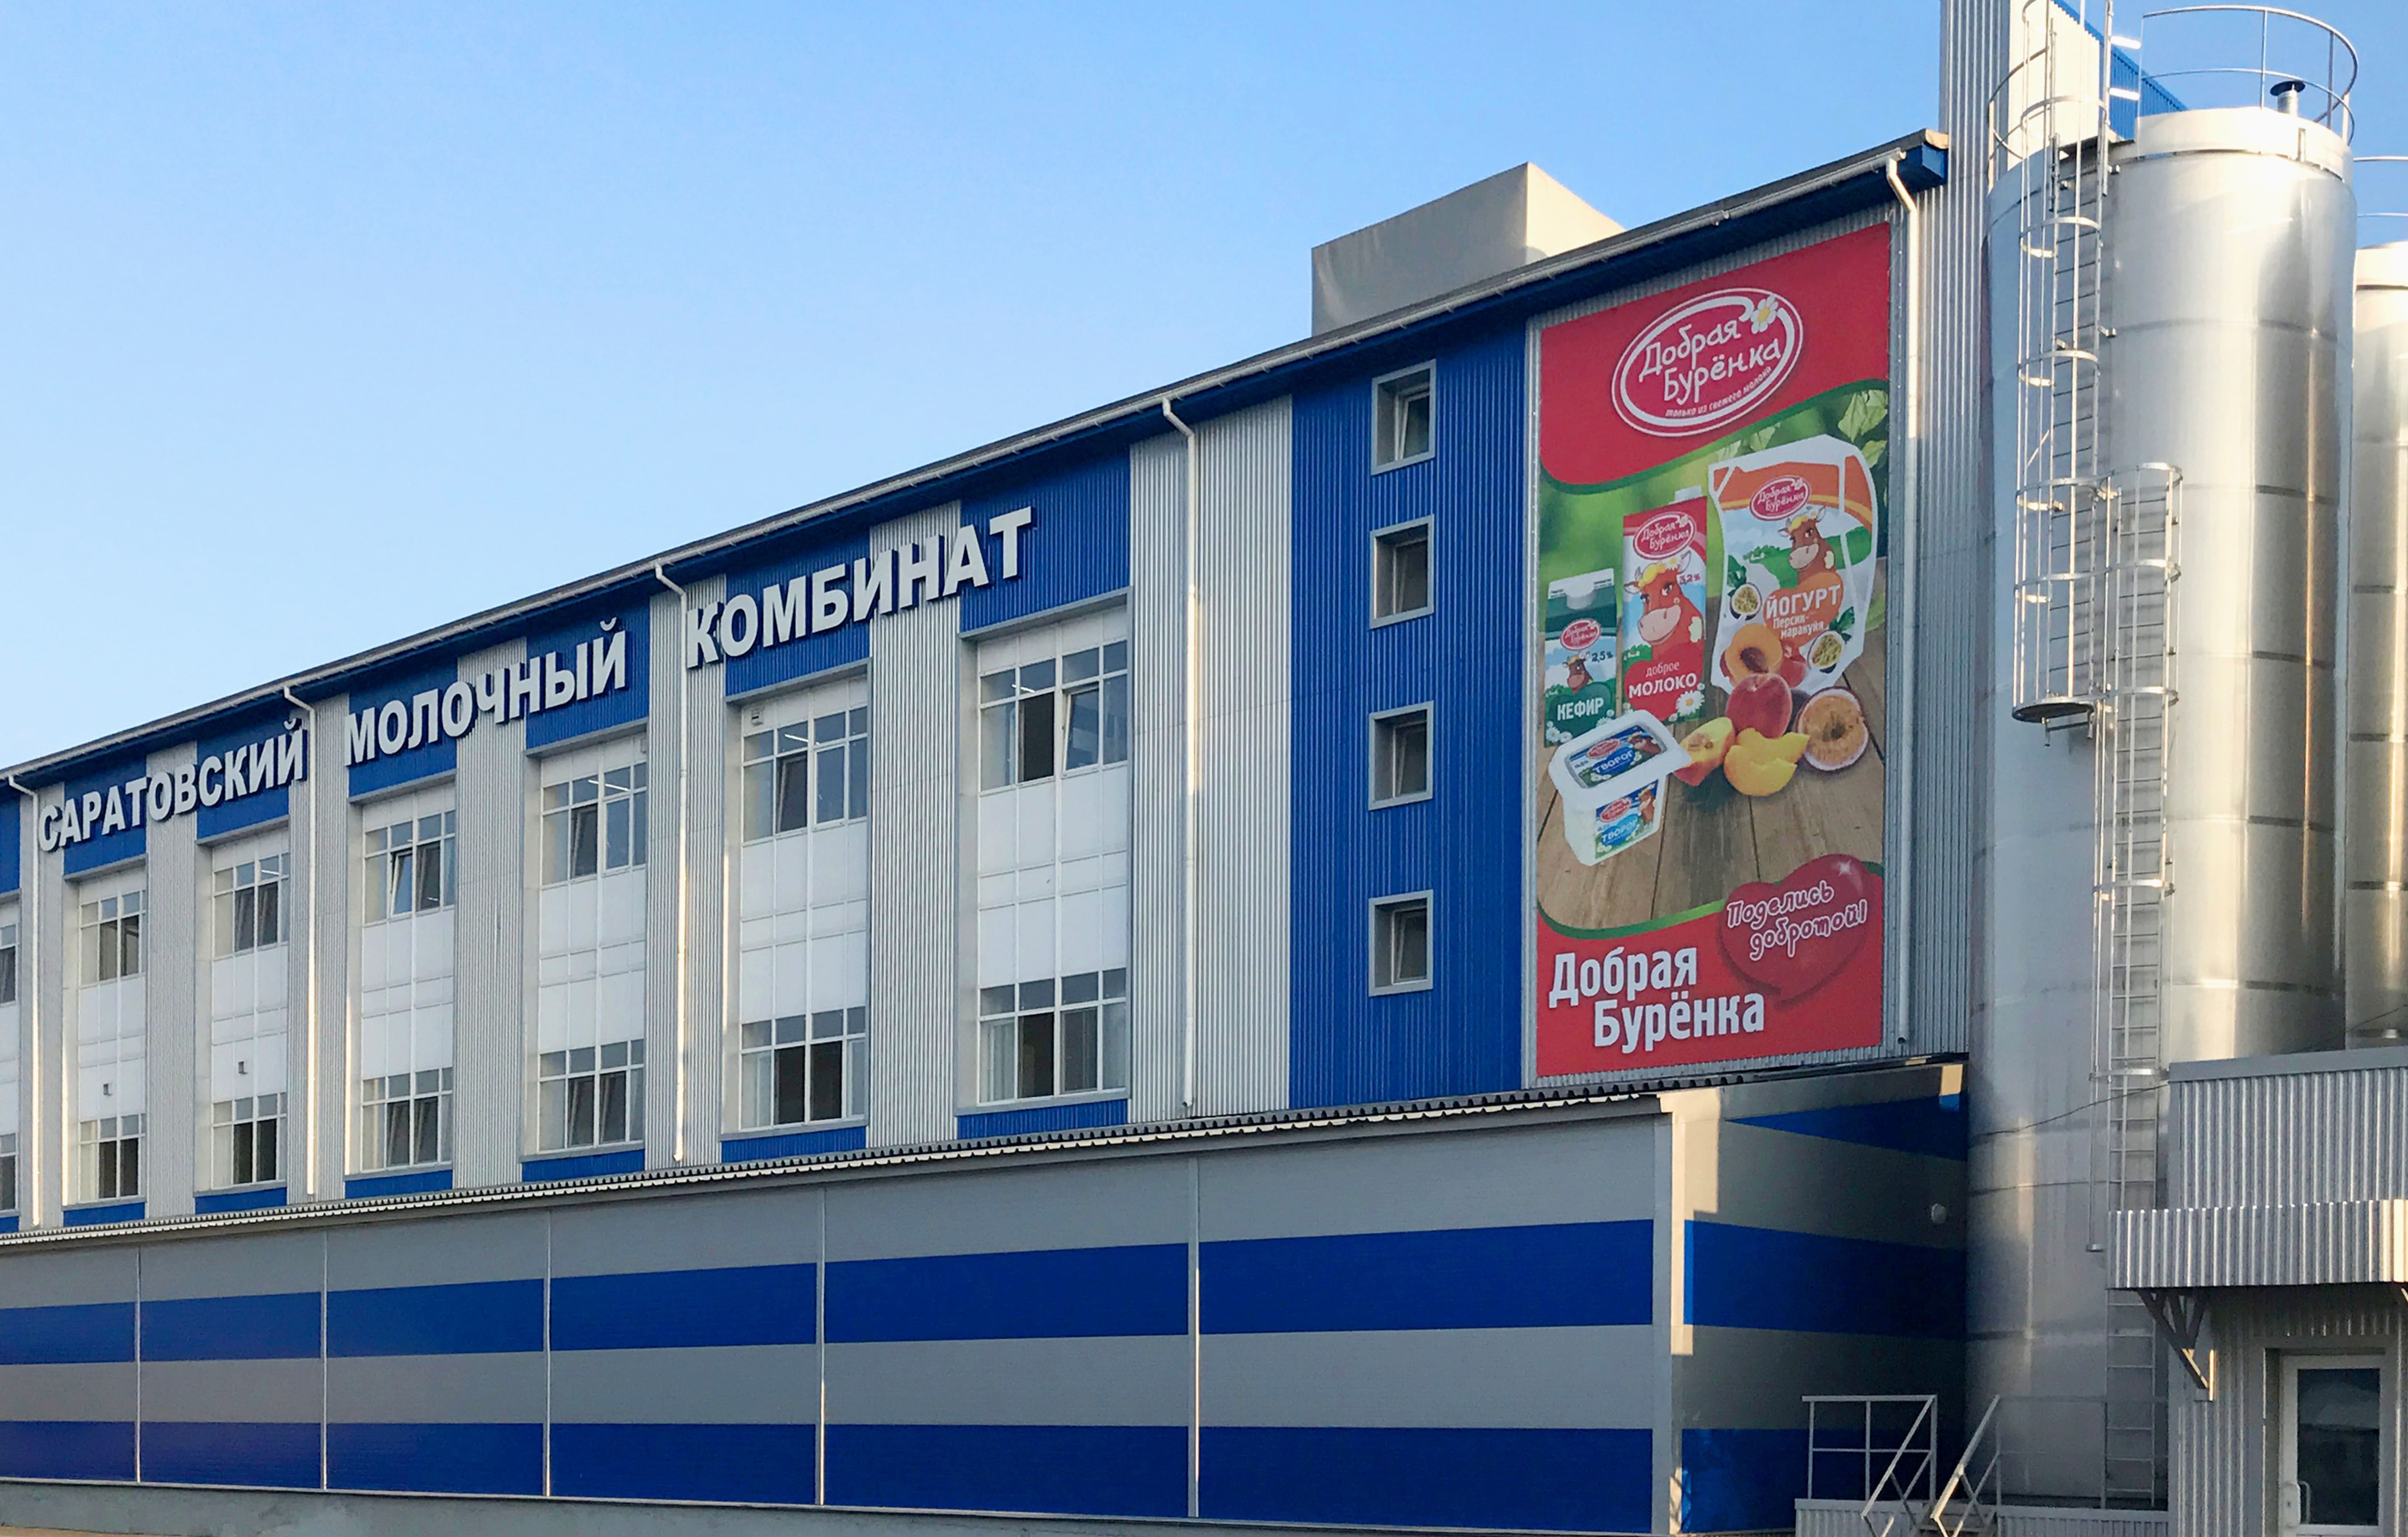 Саратовский молочный комбинат возобновил производство сливок в упаковке TBA Edge весом 500 грамм.